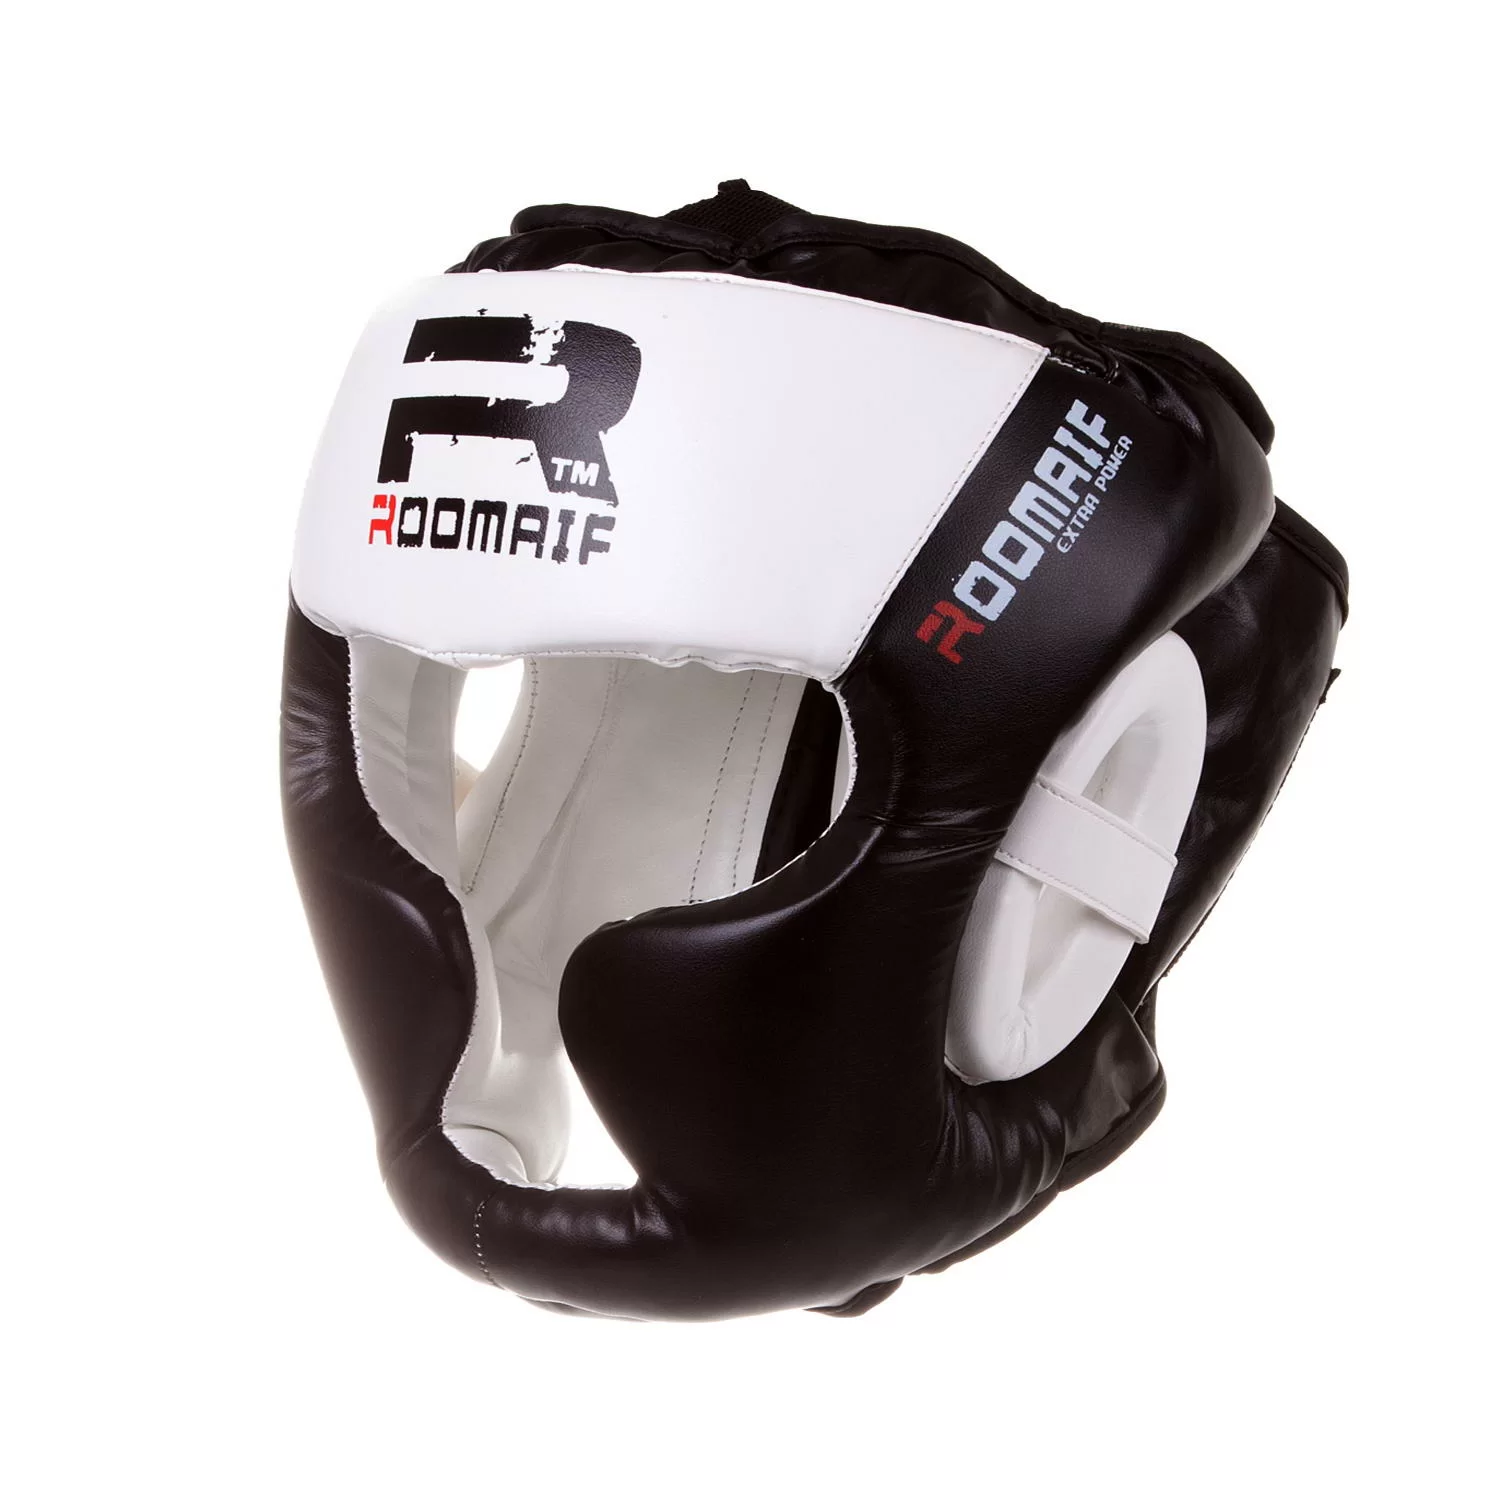 Реальное фото Шлем боксерский Roomaif RHG-150 3G PU/PL защитный черно-белый от магазина СпортСЕ